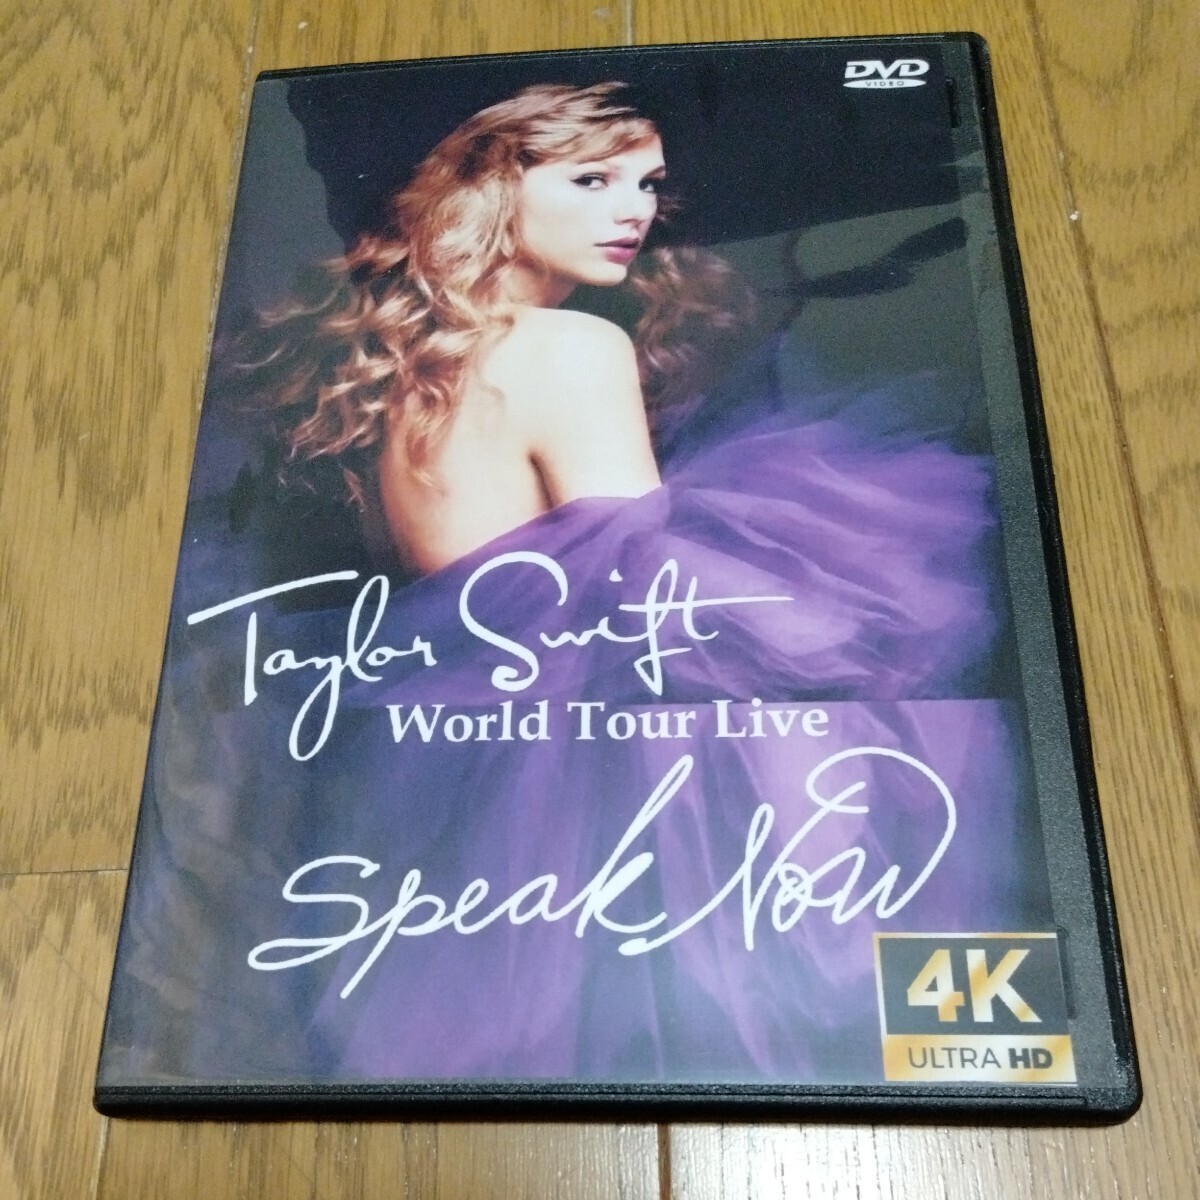  Taylor swiftoDVD TAYLOR SWIFT DVD Taylor *swiftoDVD